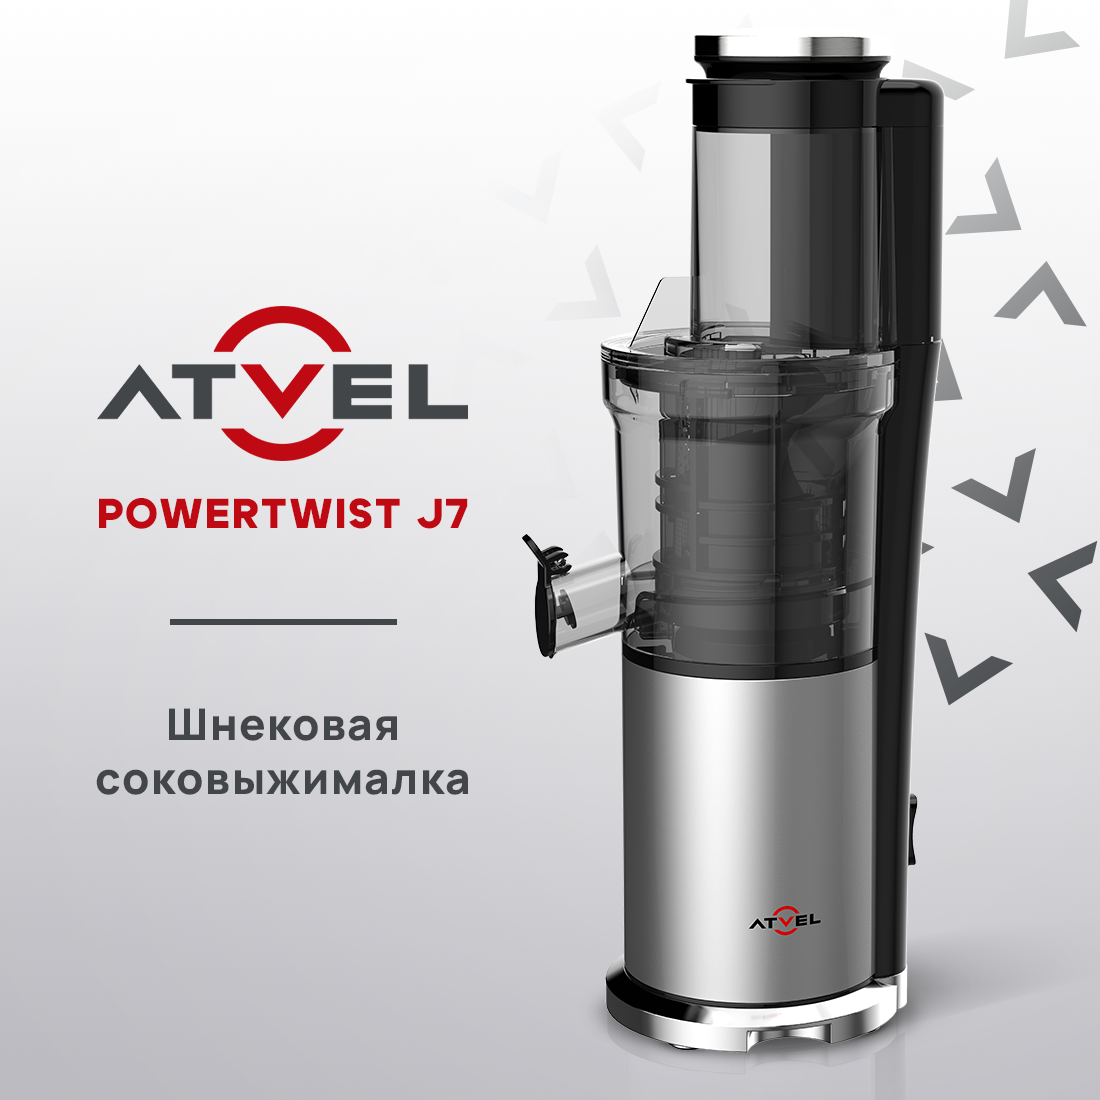 Соковыжималка шнековая Atvel powertwist j7 180 Вт серебристая, купить в Москве, цены в интернет-магазинах на Мегамаркет